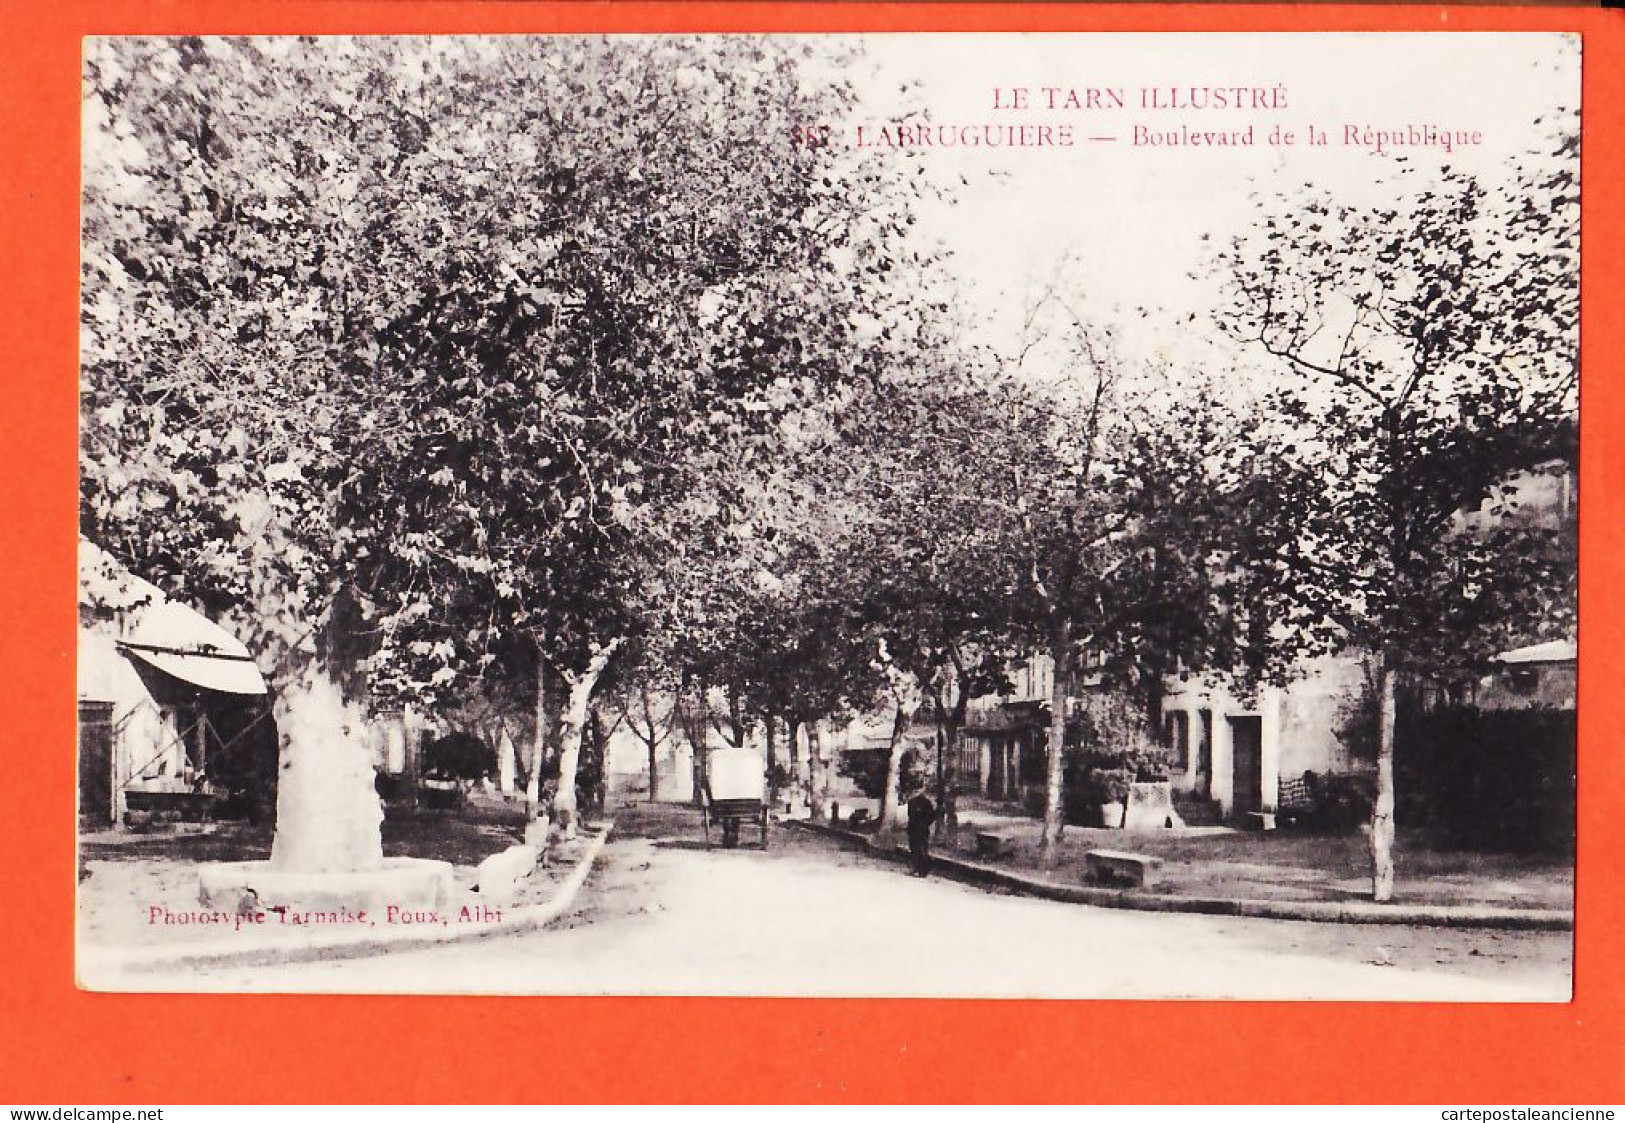 01913 / LABRUGUIERE 81-Tarn Boulevard De La REPUBLIQUE Allée Platanes 1916 -Phototypie Tarnaise Albi POUX  - Labruguière